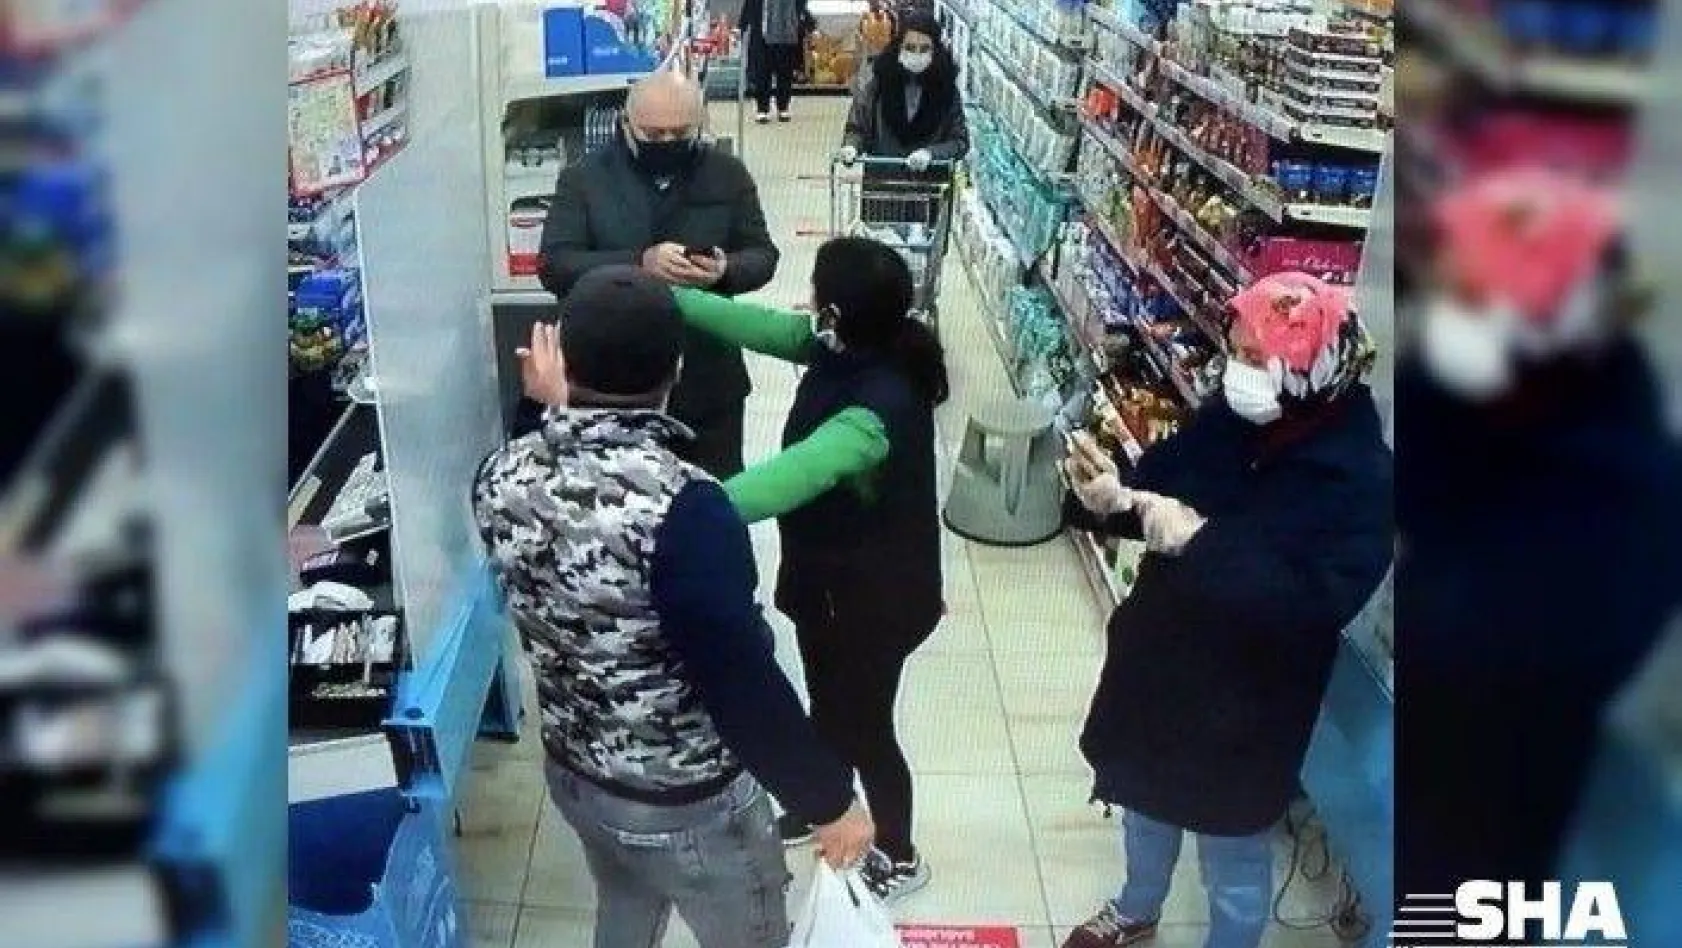 (ÖZEL) Maskesiz alışveriş yapmak isteyen kişi vatandaşlarla tartıştı